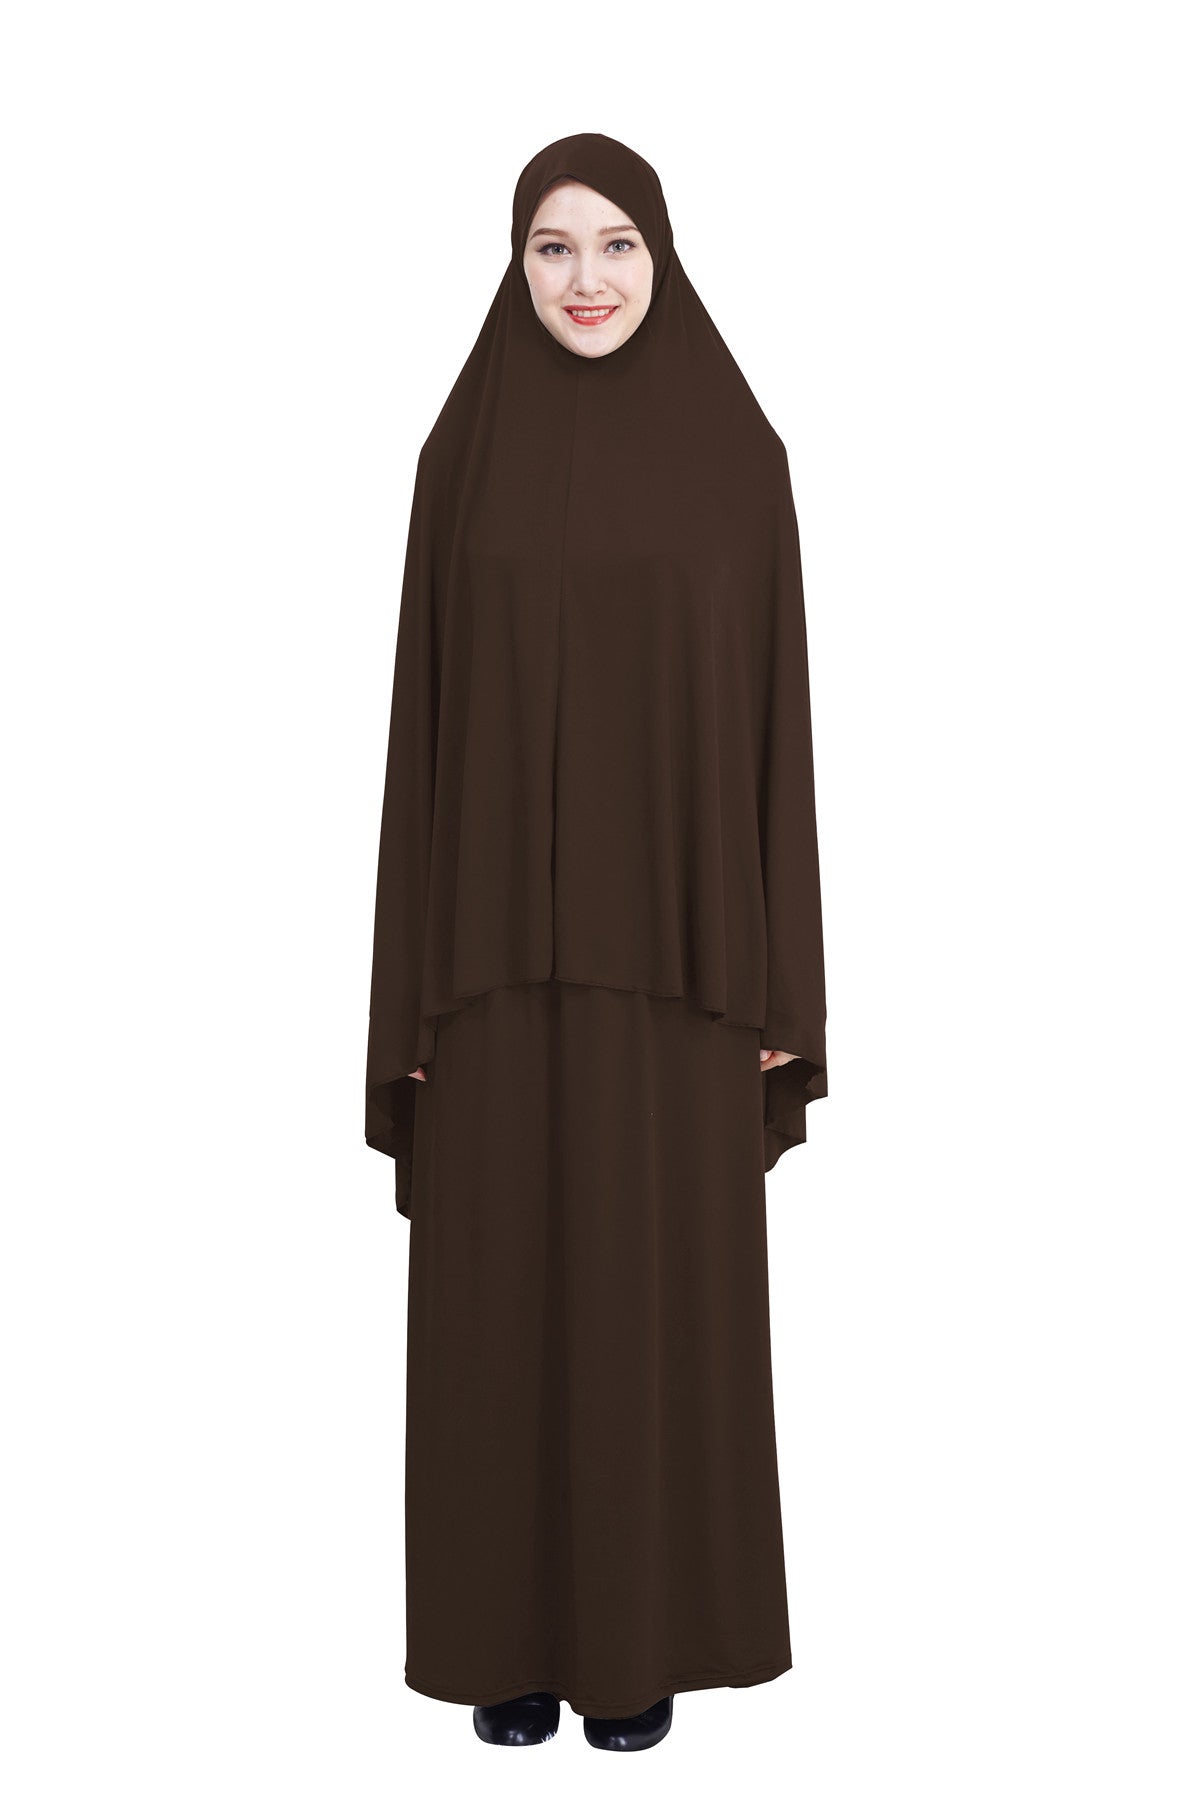 Muslim ladies hijab skirt suit prayer dress (MORE COLORS)